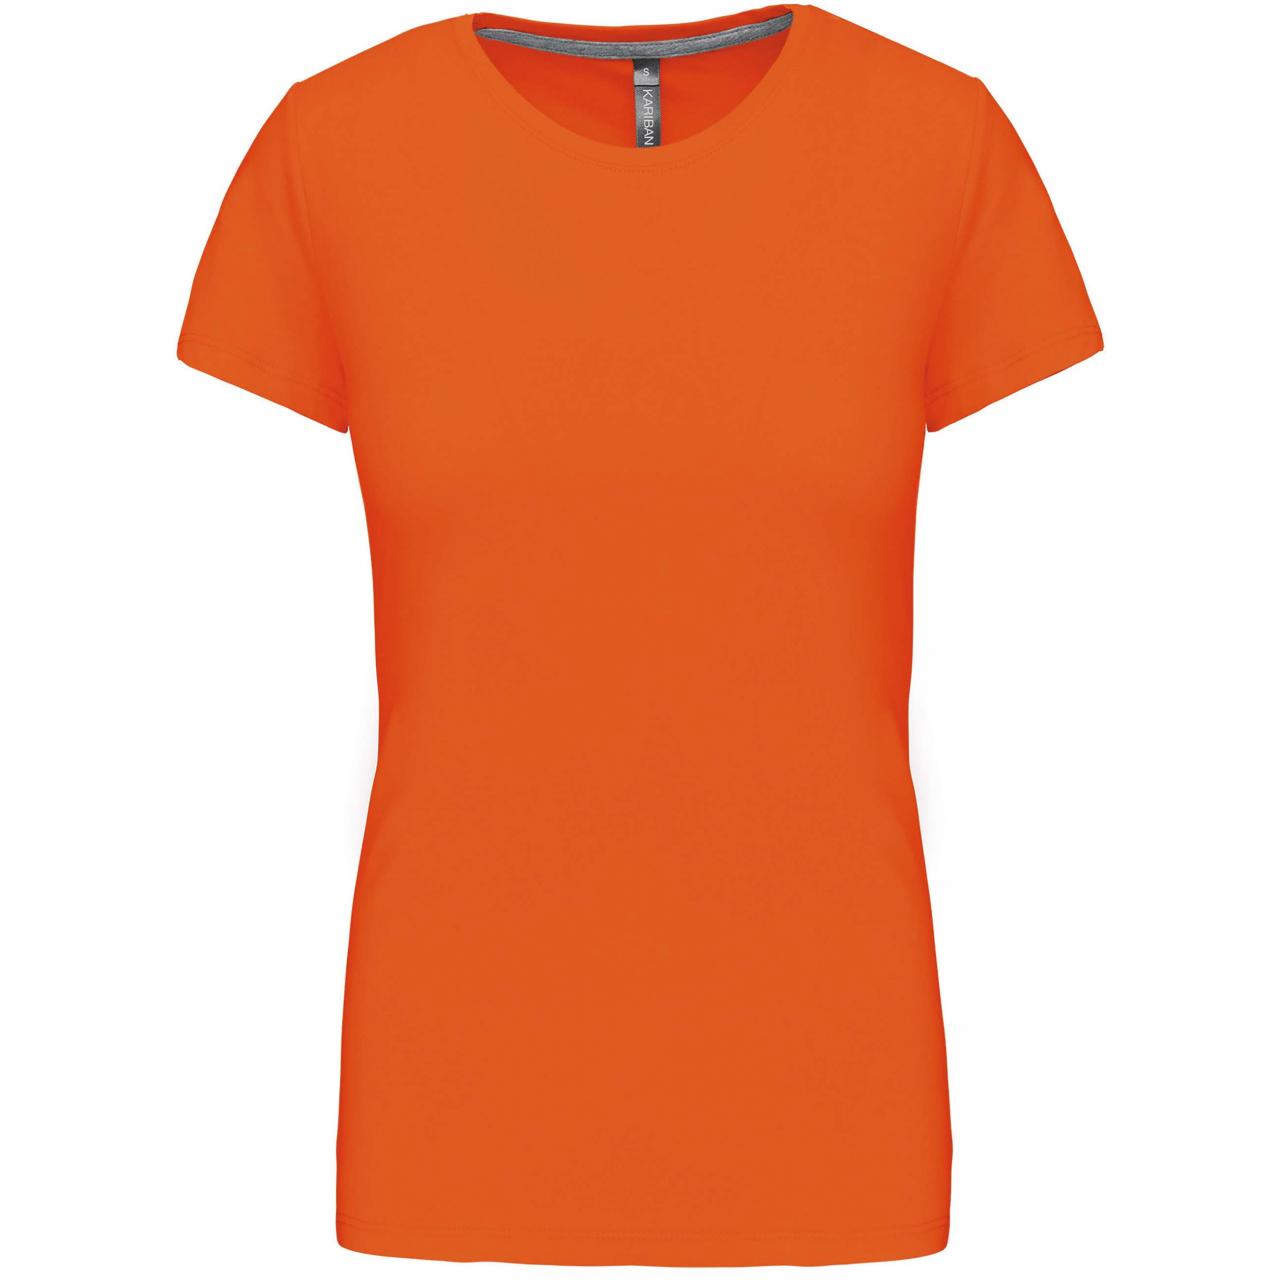 Dámské tričko Kariban s krátkým rukávem - oranžové, XL